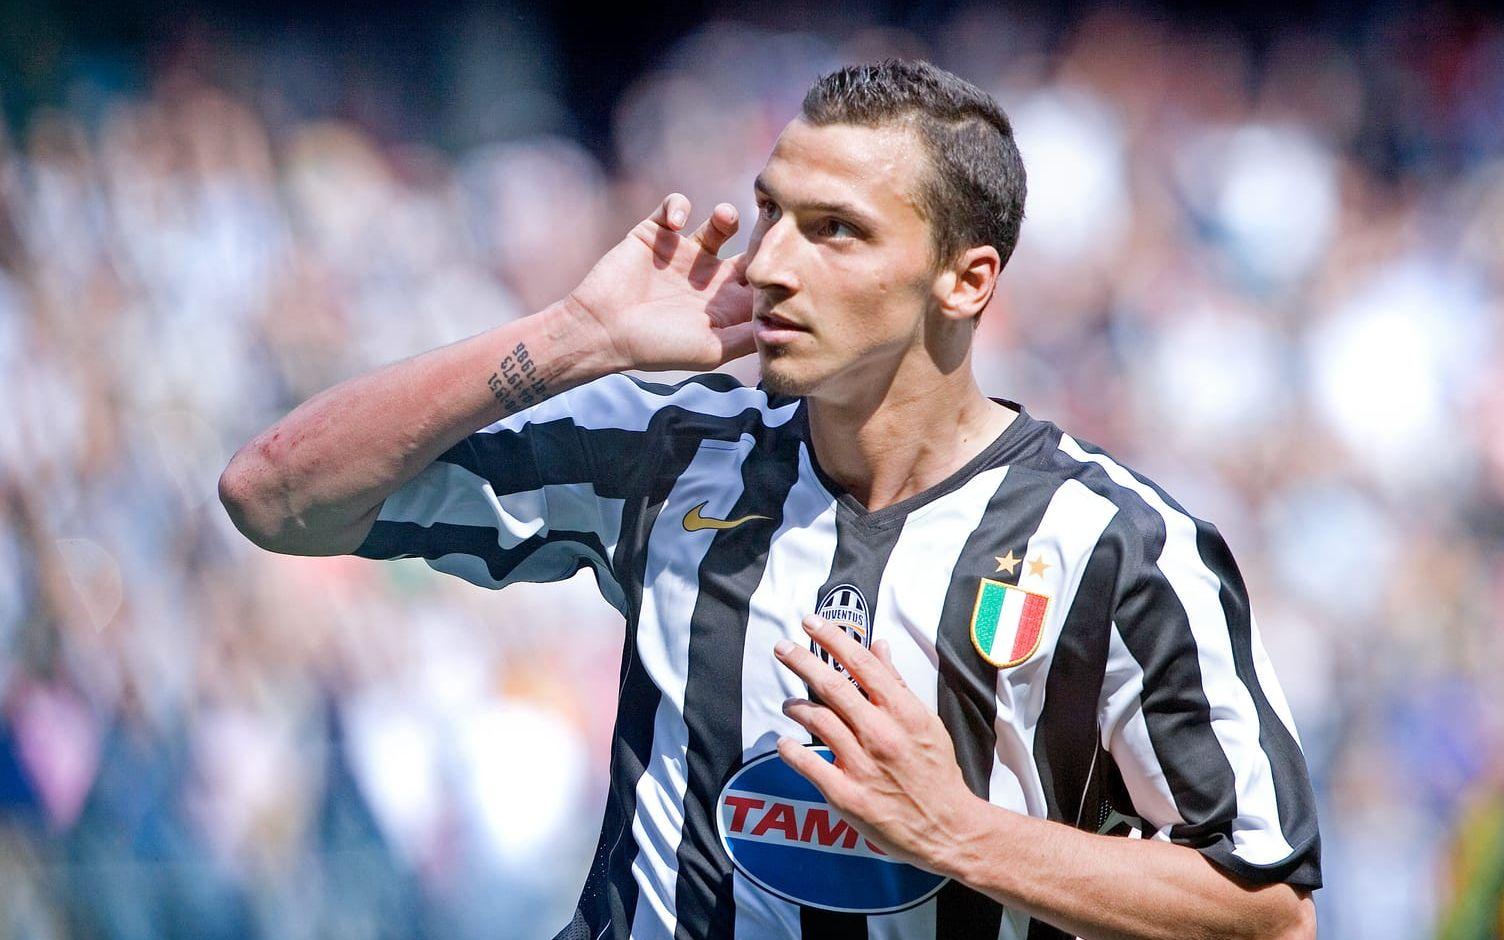 Därefter blev det spel i Juventus. Bild: Bildbyrån